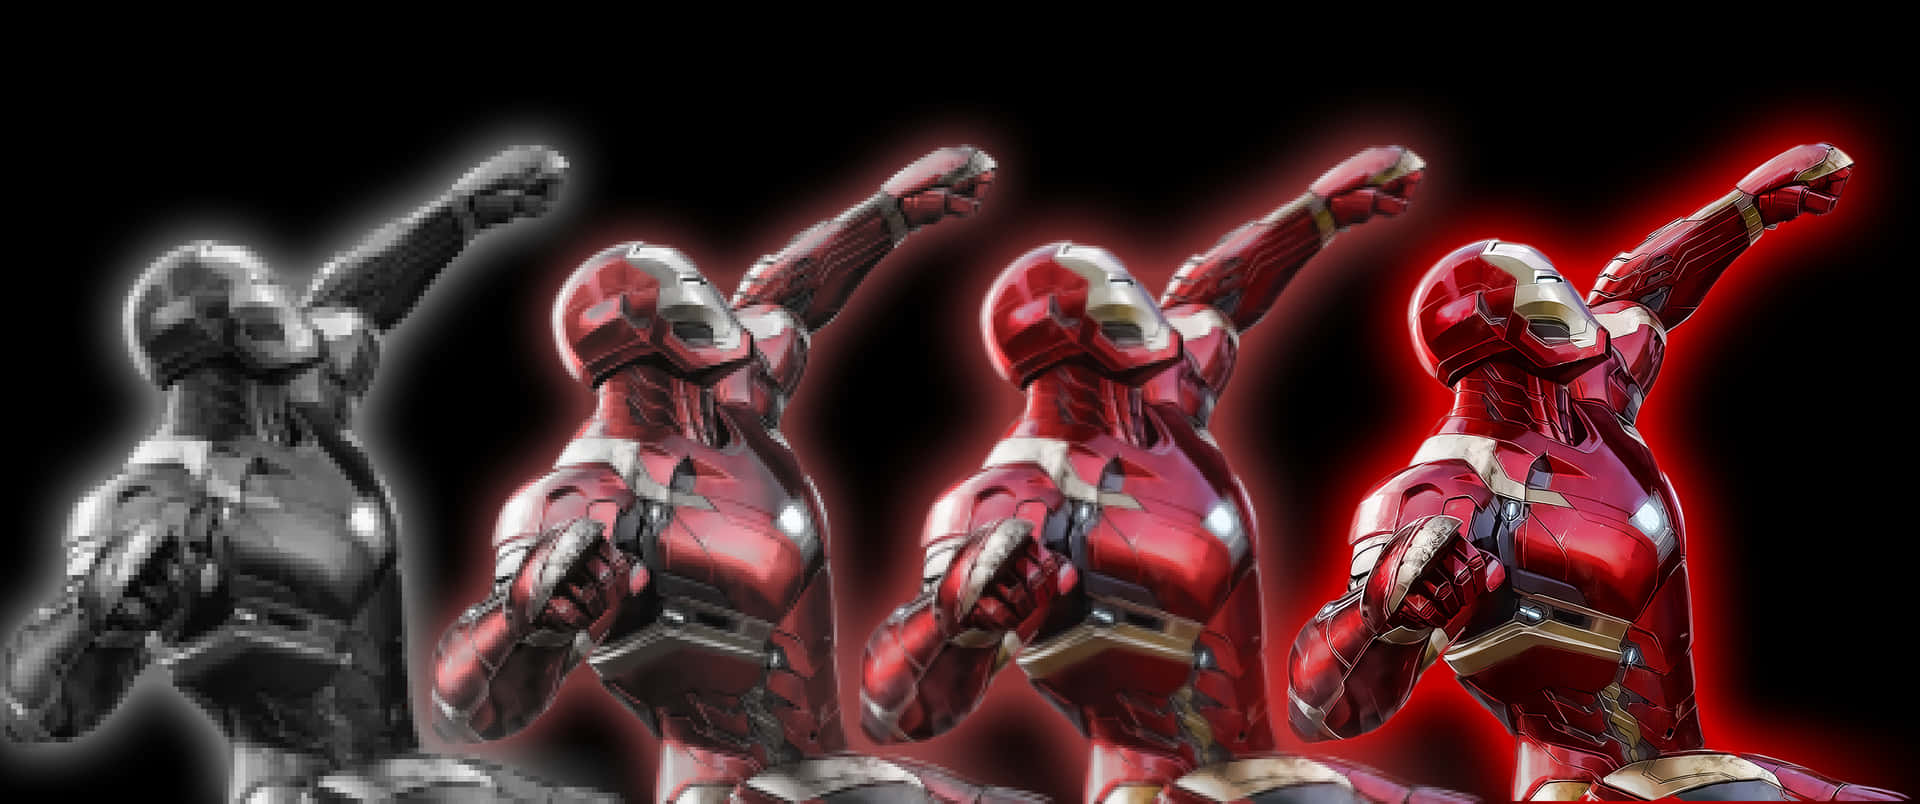 Statuer af Iron Man i forskellige farver